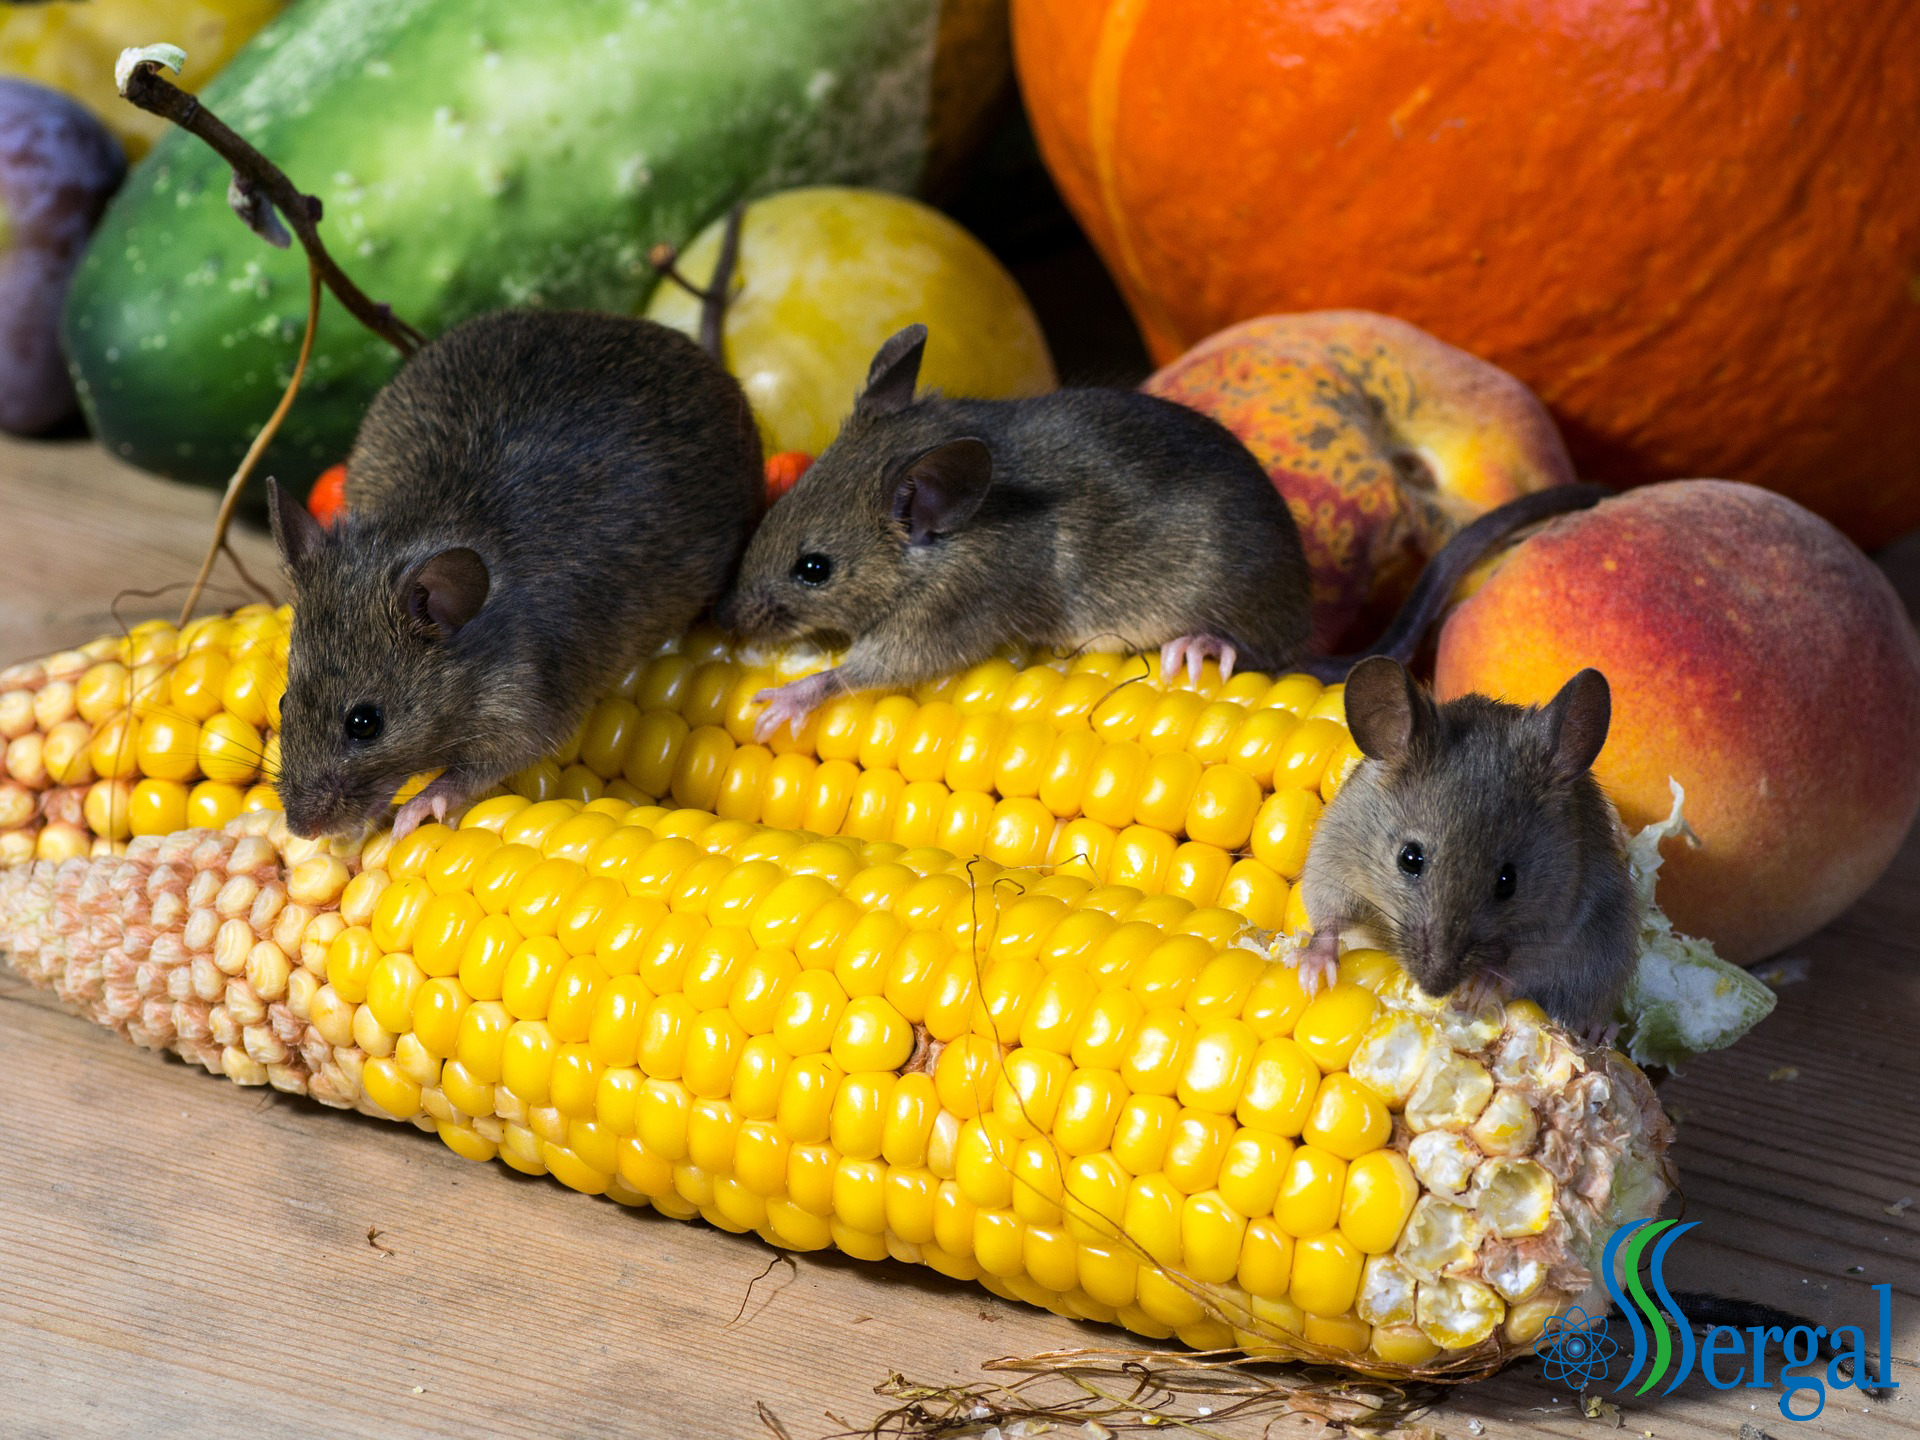 plaga-de-ratones-en-casa-te-ayudamos-a-combatirlos-sergal